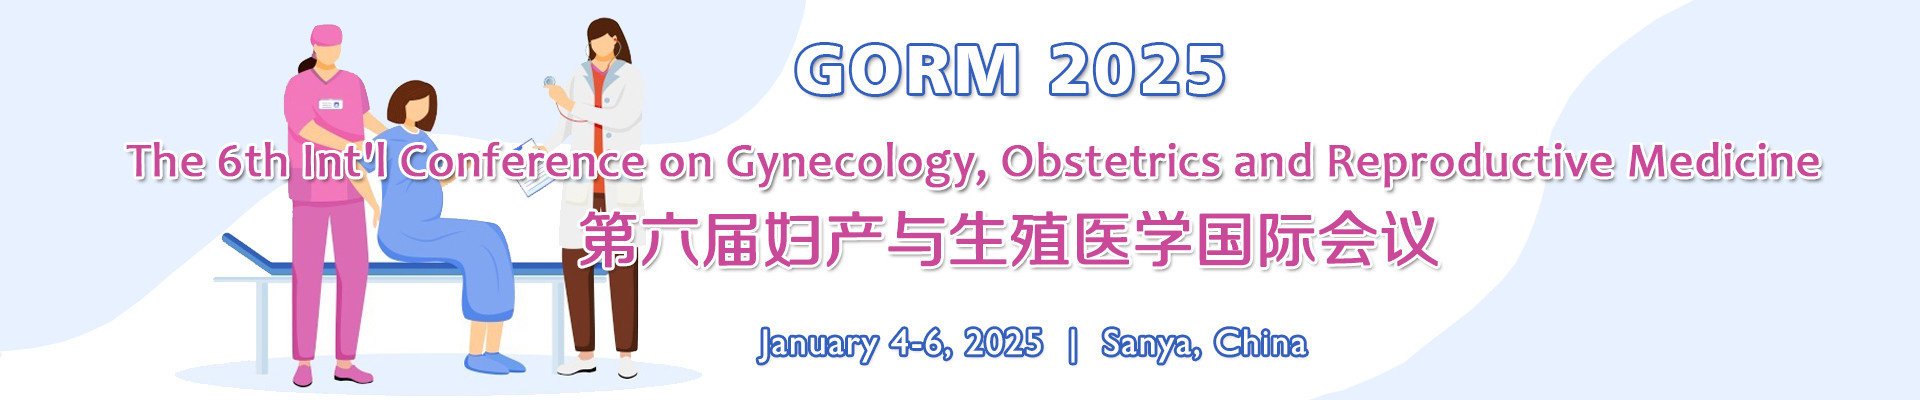 第六届妇产与生殖医学国际会议(GORM 2025)